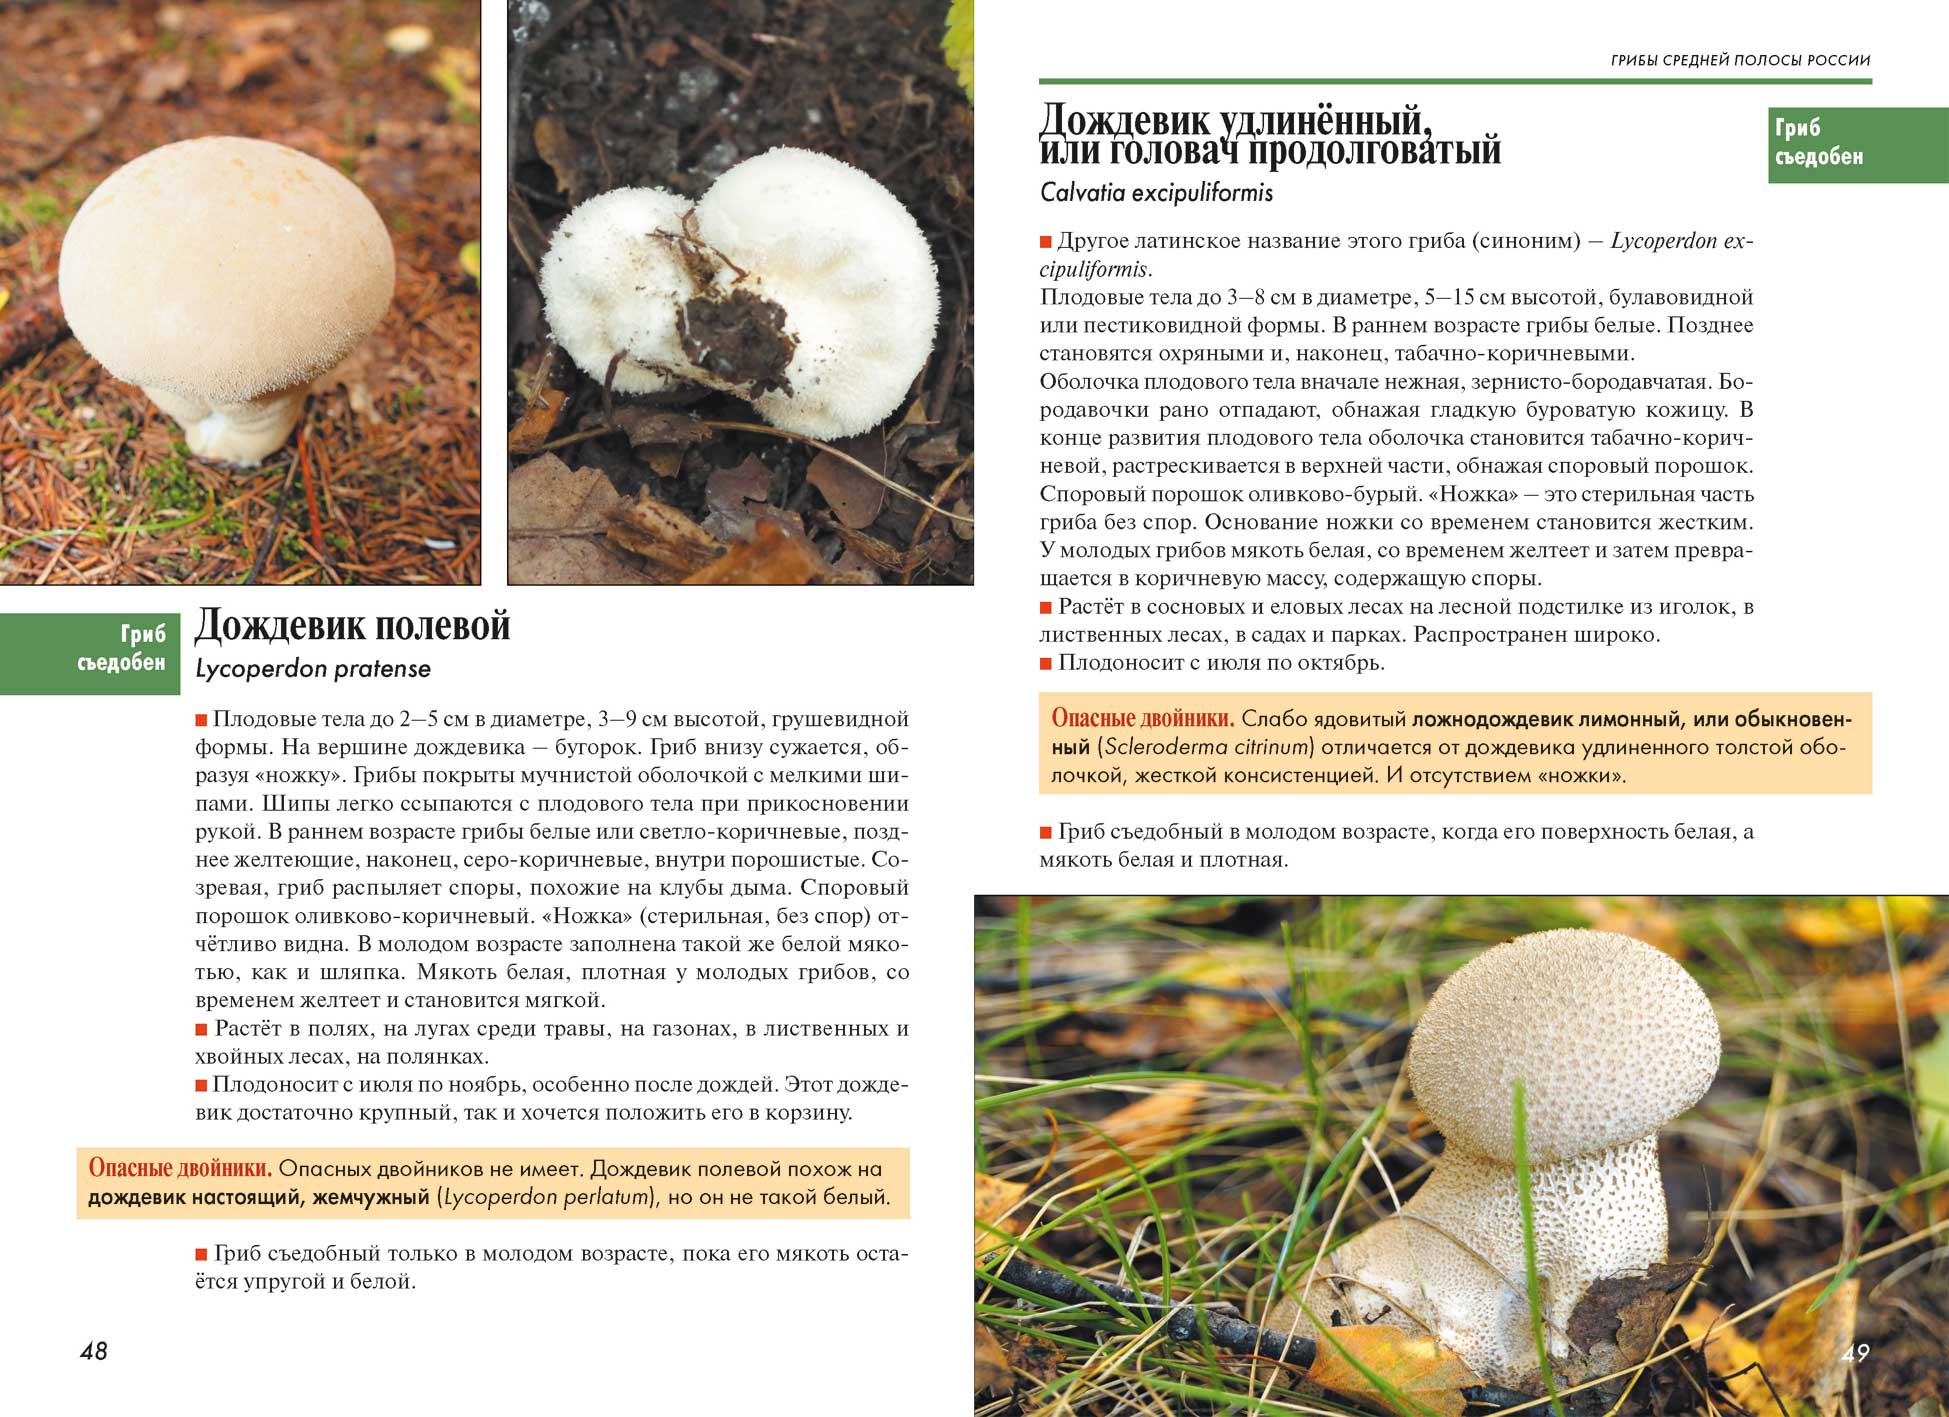 Трутовик чешуйчатый: описание гриба, характеристики